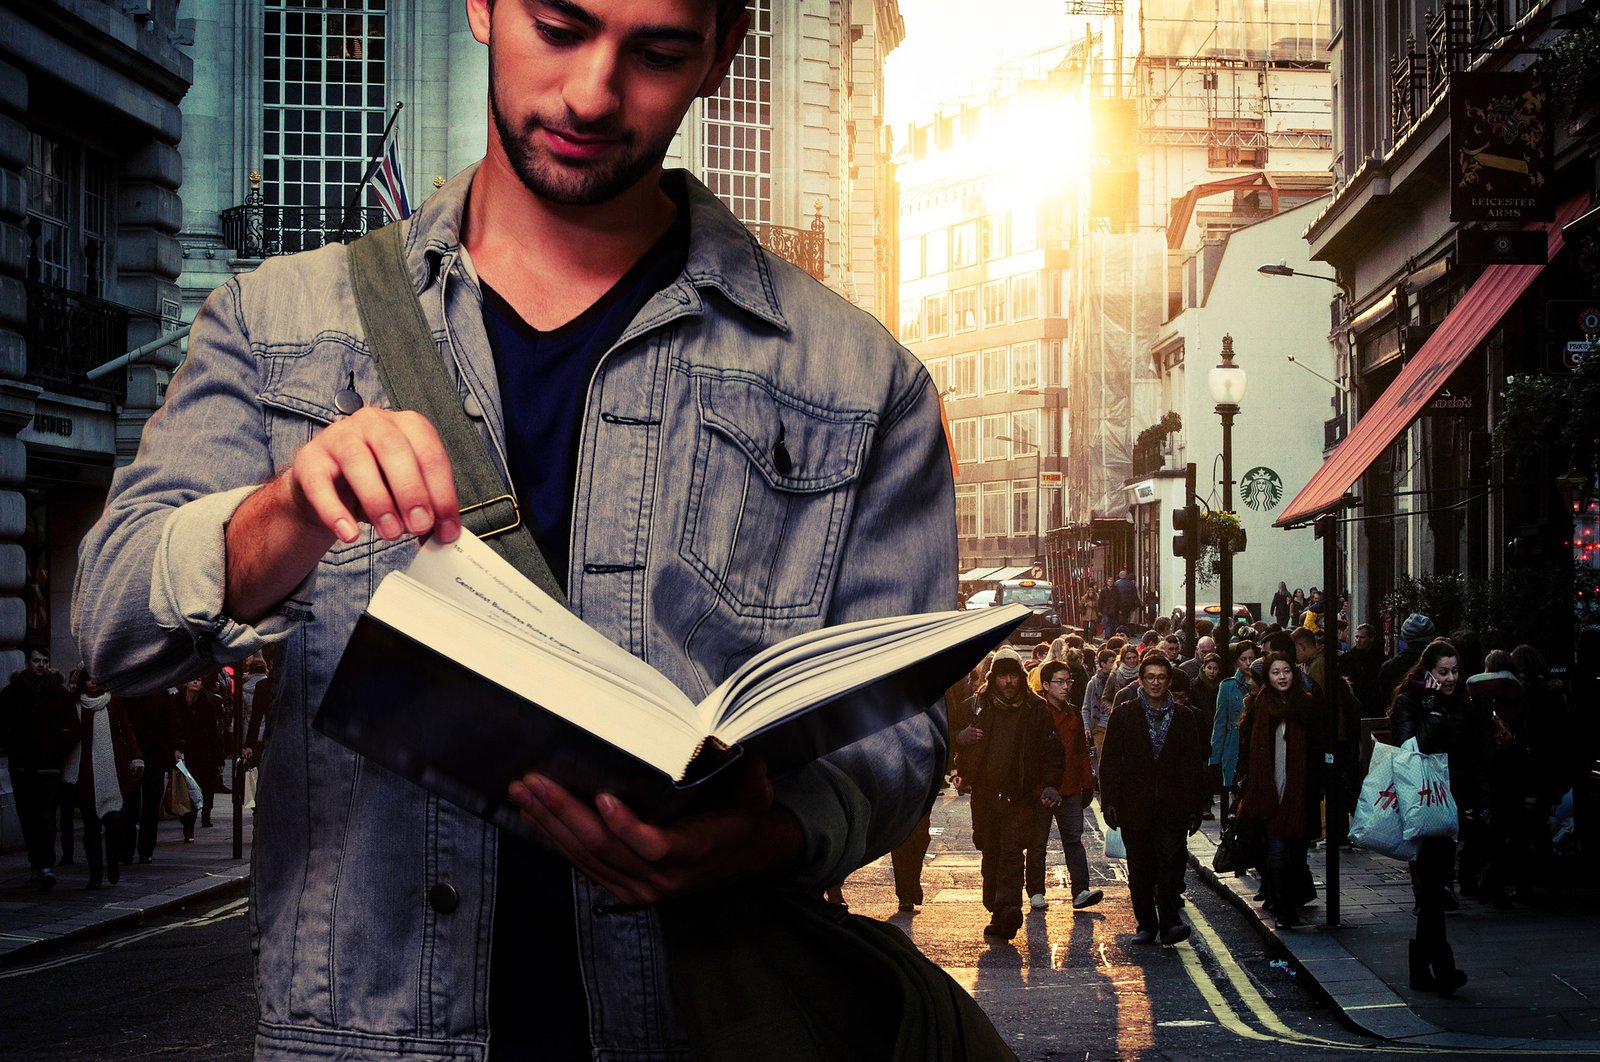 Ein mit Jeansjacke und Umhängetasche bekleideter Mann hält ein aufgeschlagenes Buch in den Händen. Hinter ihm sind viele Menschen zu sehen, die sich in einer Großstadt bewegen.